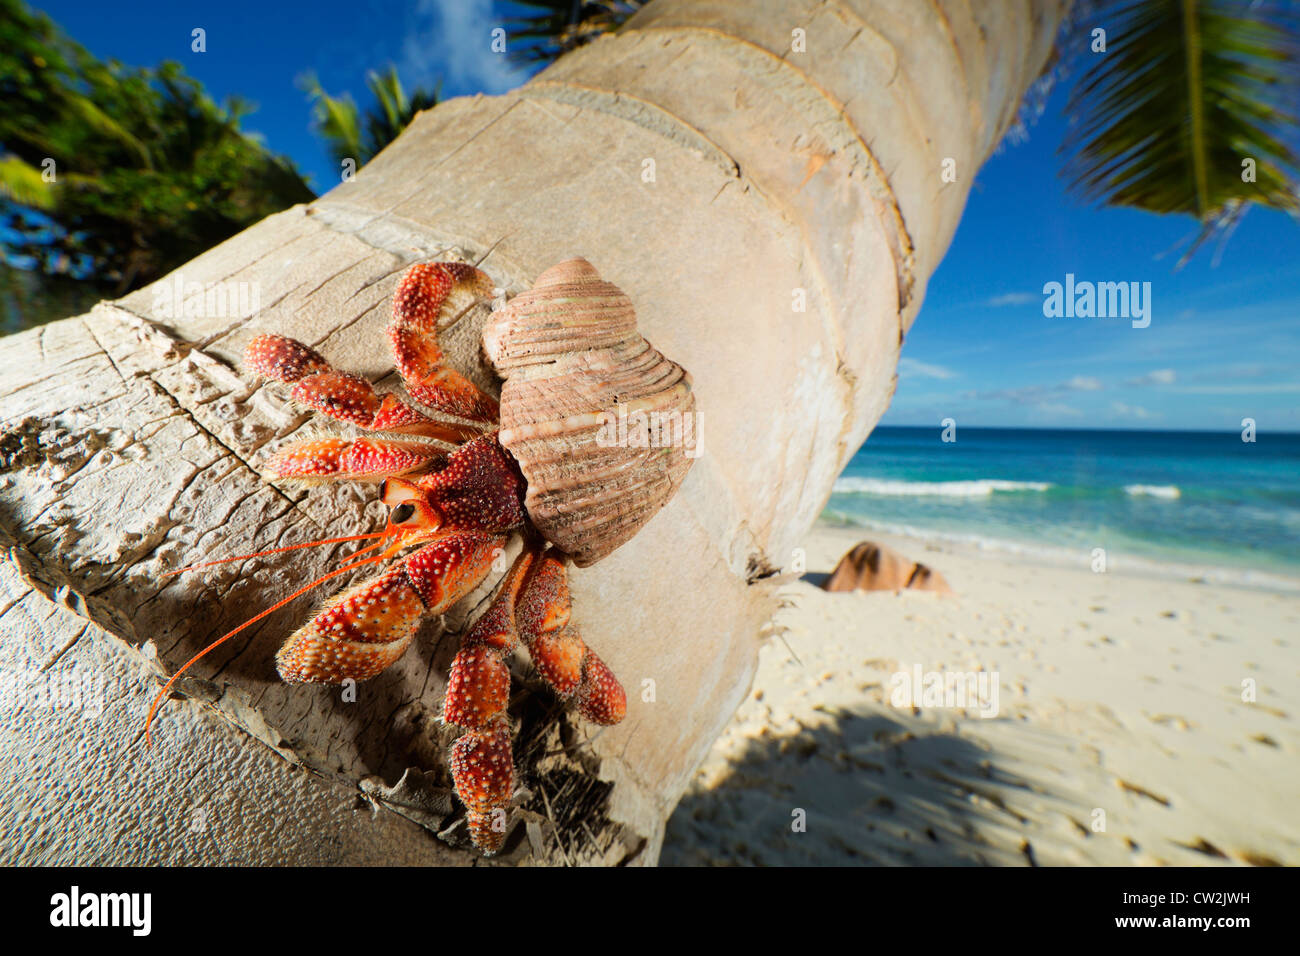 Cangrejo ermitaño (Anomura spp) en el tallo de la palmera de coco. Seychelles Foto de stock